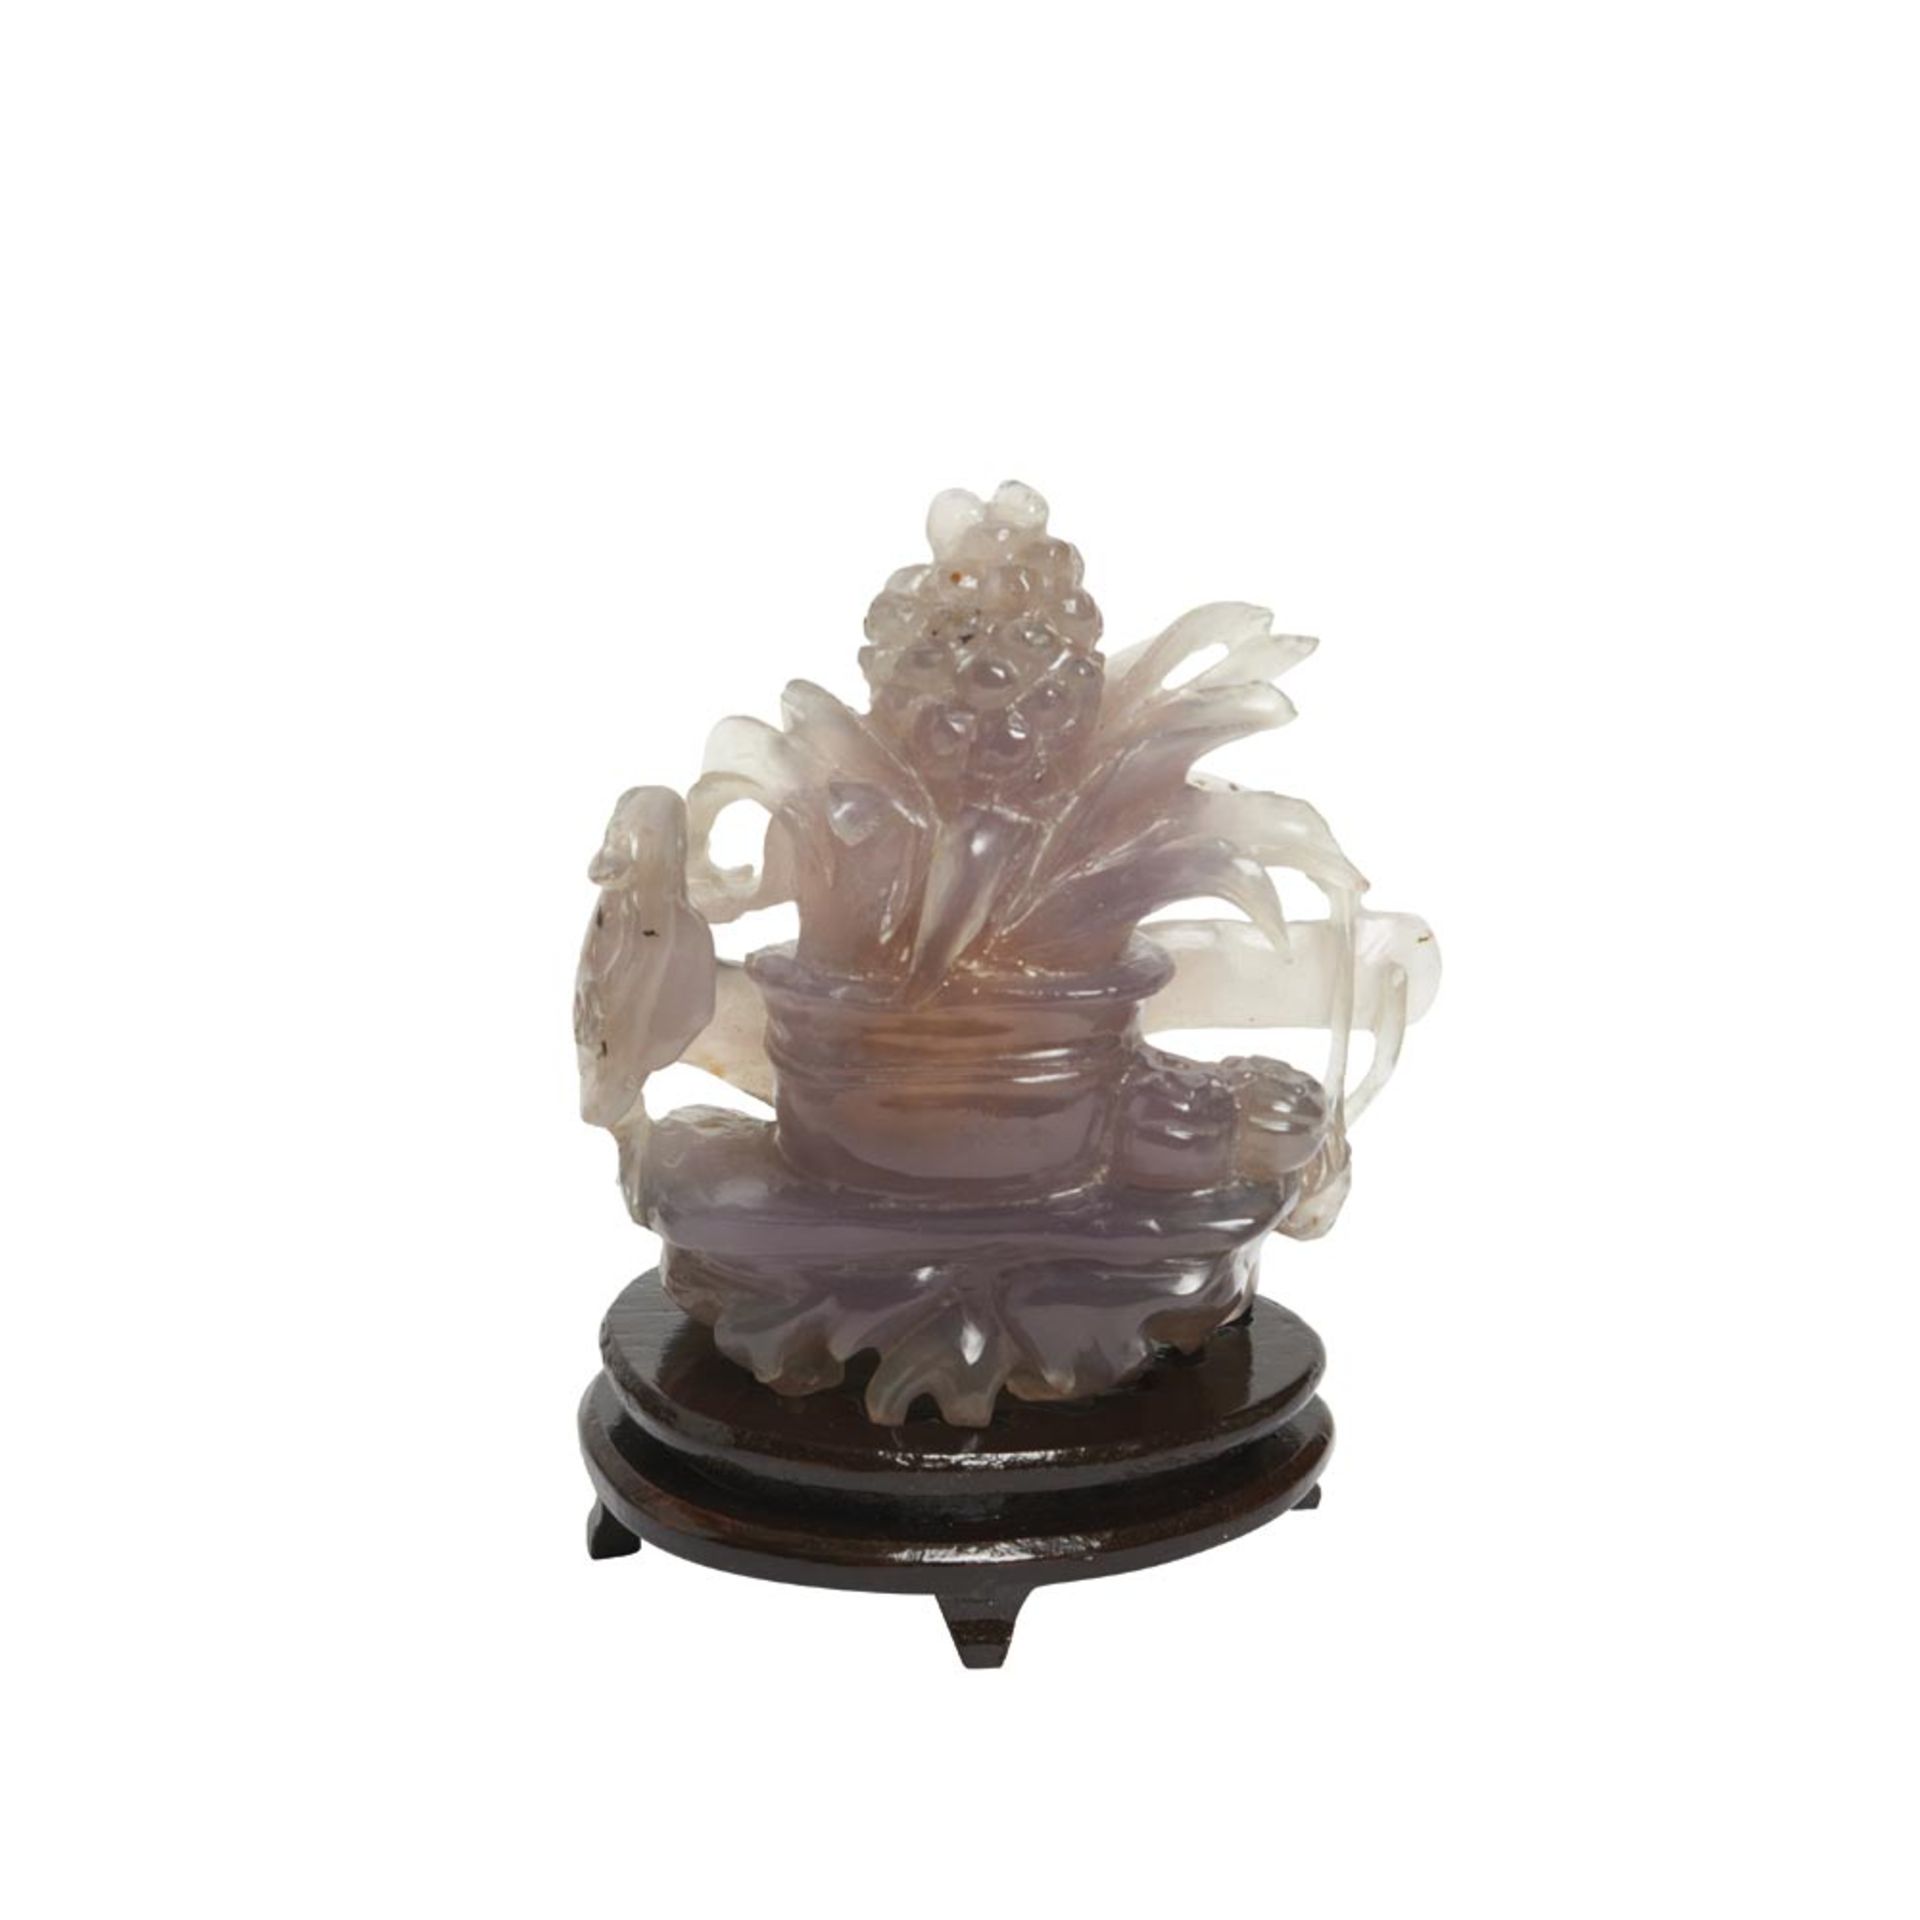 Chinese agate centrepiece. Centro chino con flores en ágata calcedonia tallada sobre peana en - Bild 3 aus 3